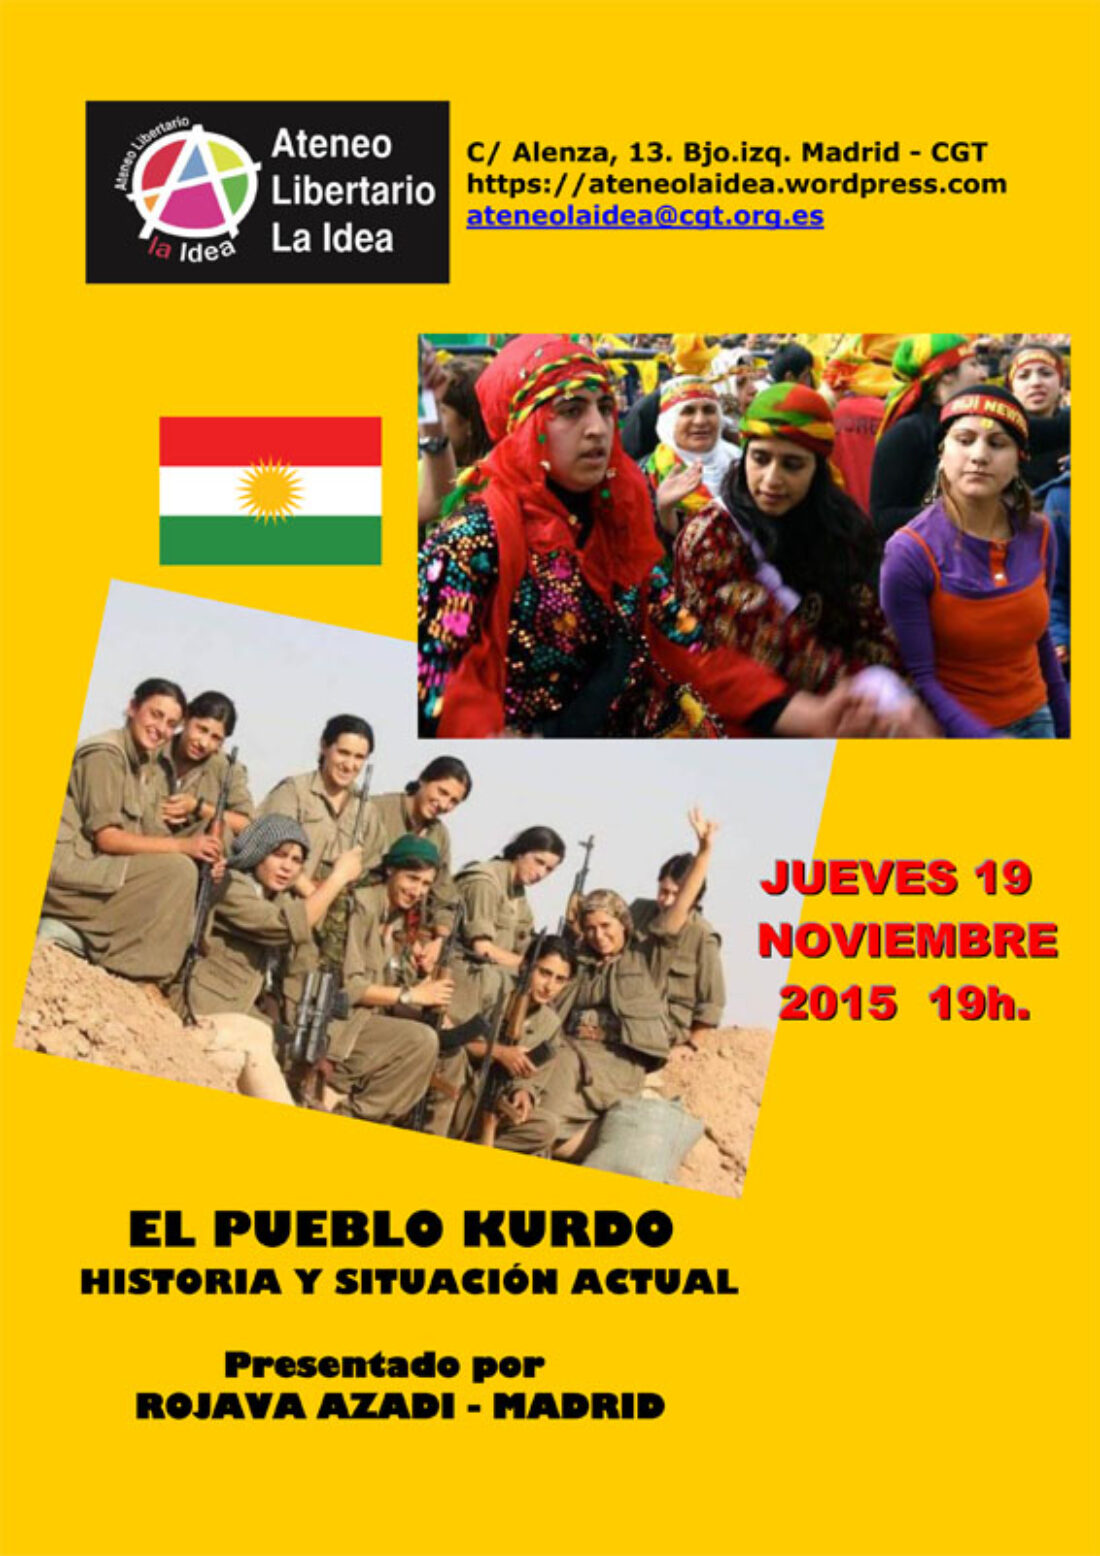 19-N: Charla-Debate sobre el pueblo kurdo en Ateneo Libertario «La Idea»